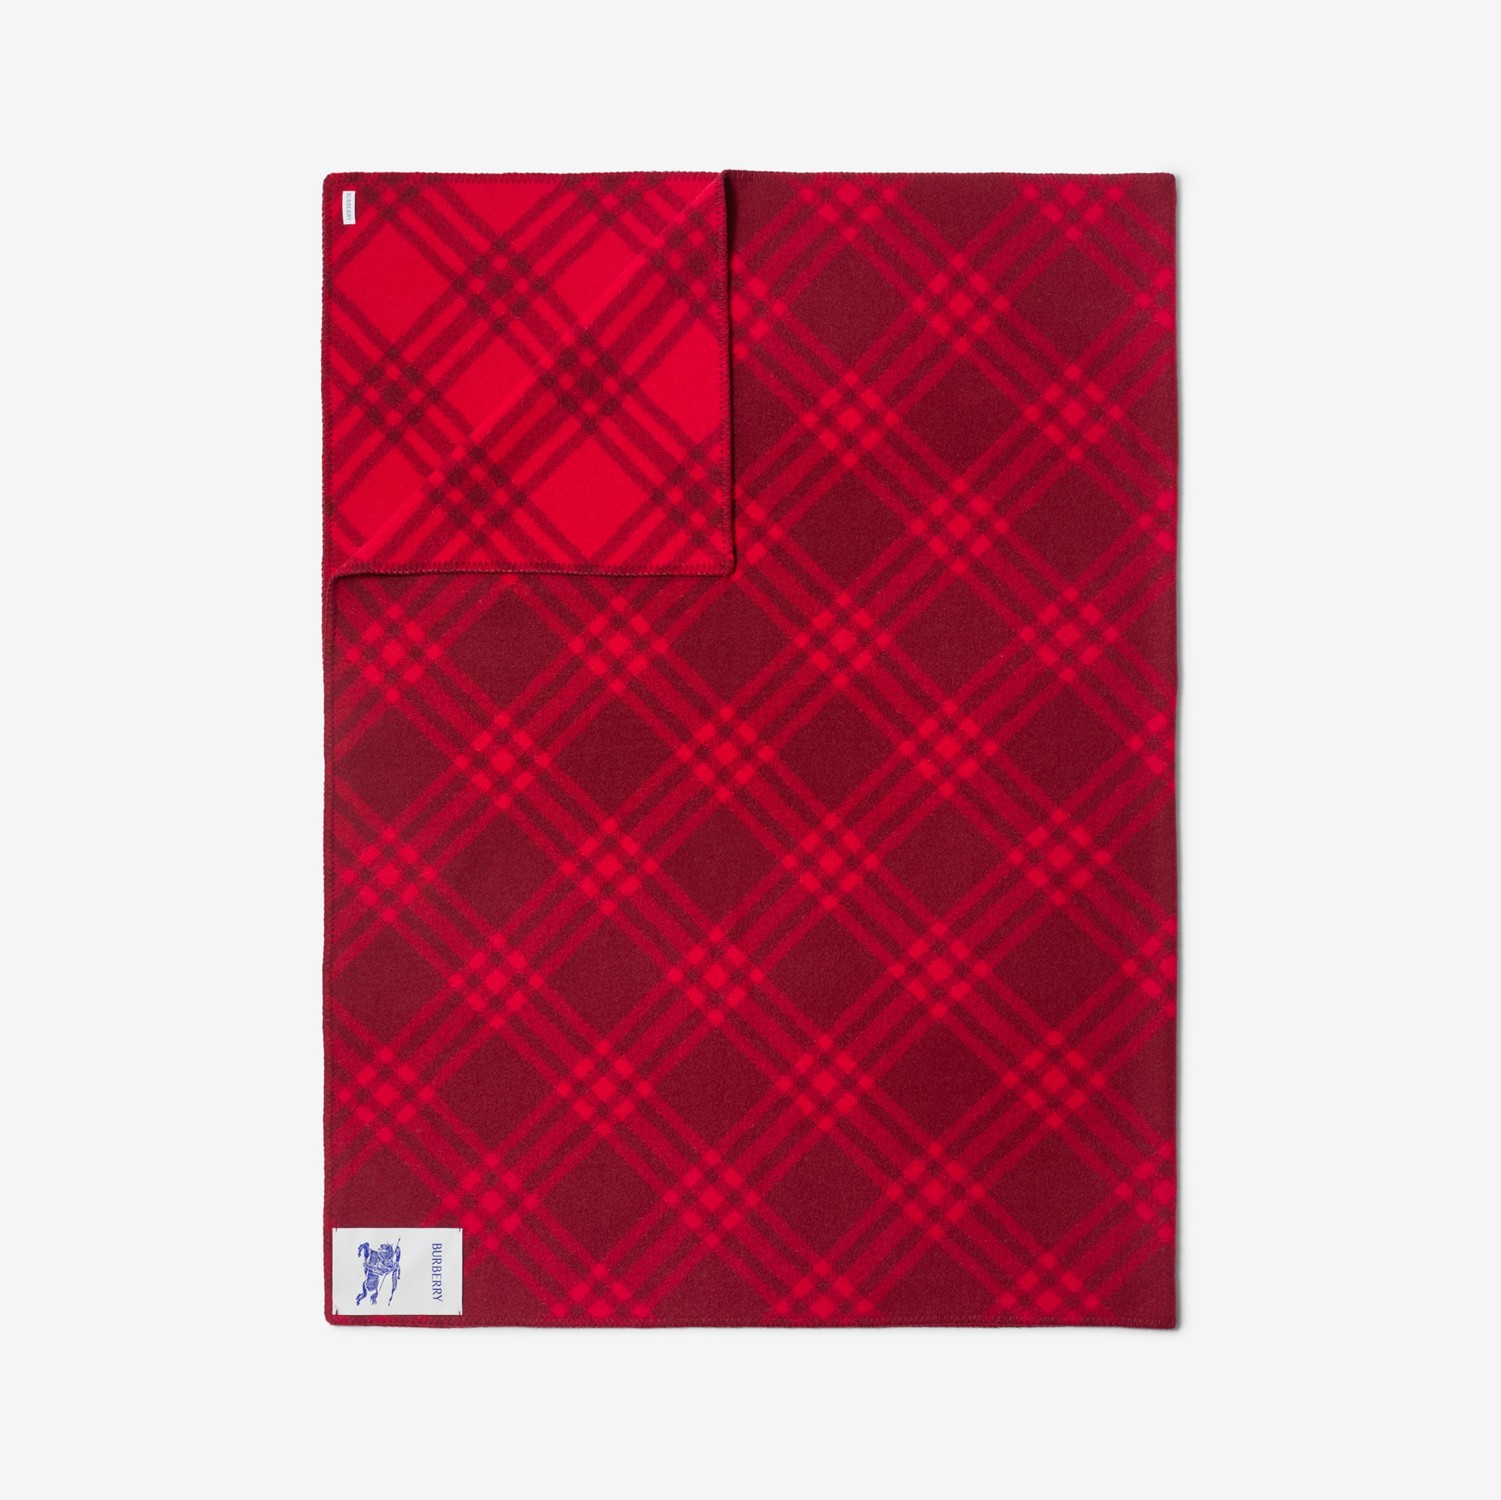 Manta en lana Check (Ripple/rojo Buzón) | Burberry® oficial